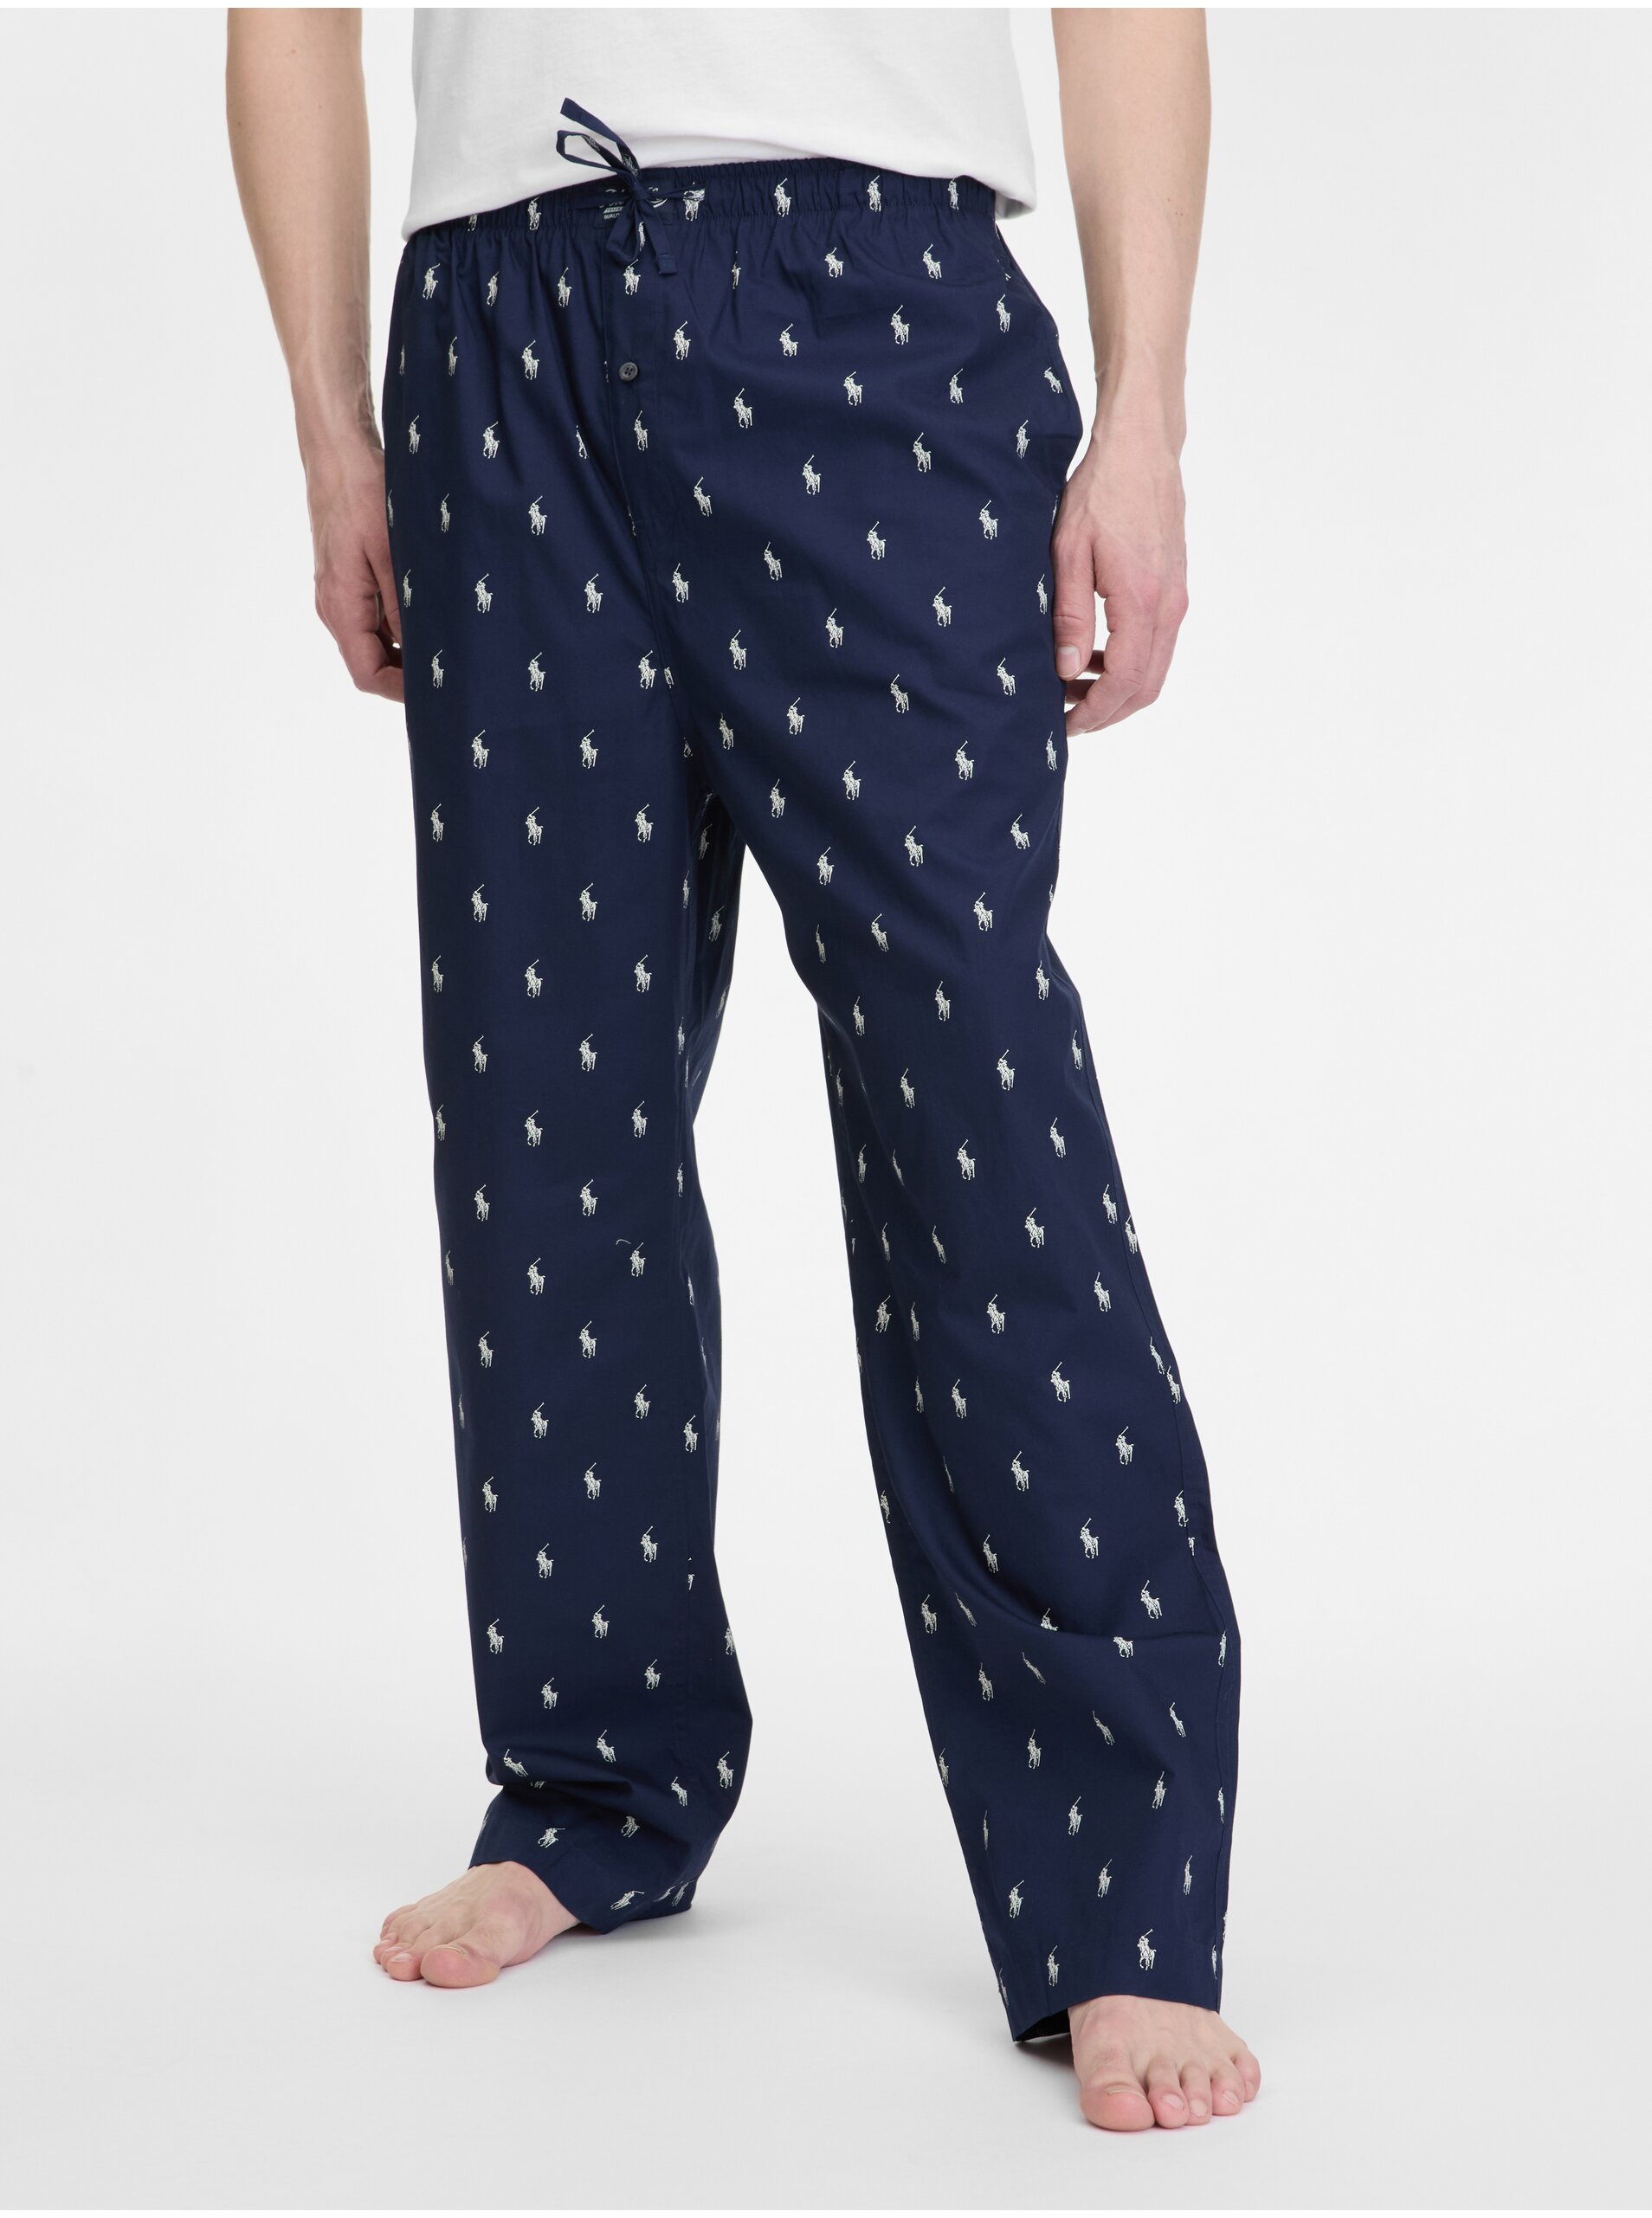 Lacno Tmavomodré pánske vzorované pyžamové nohavice Ralph Lauren